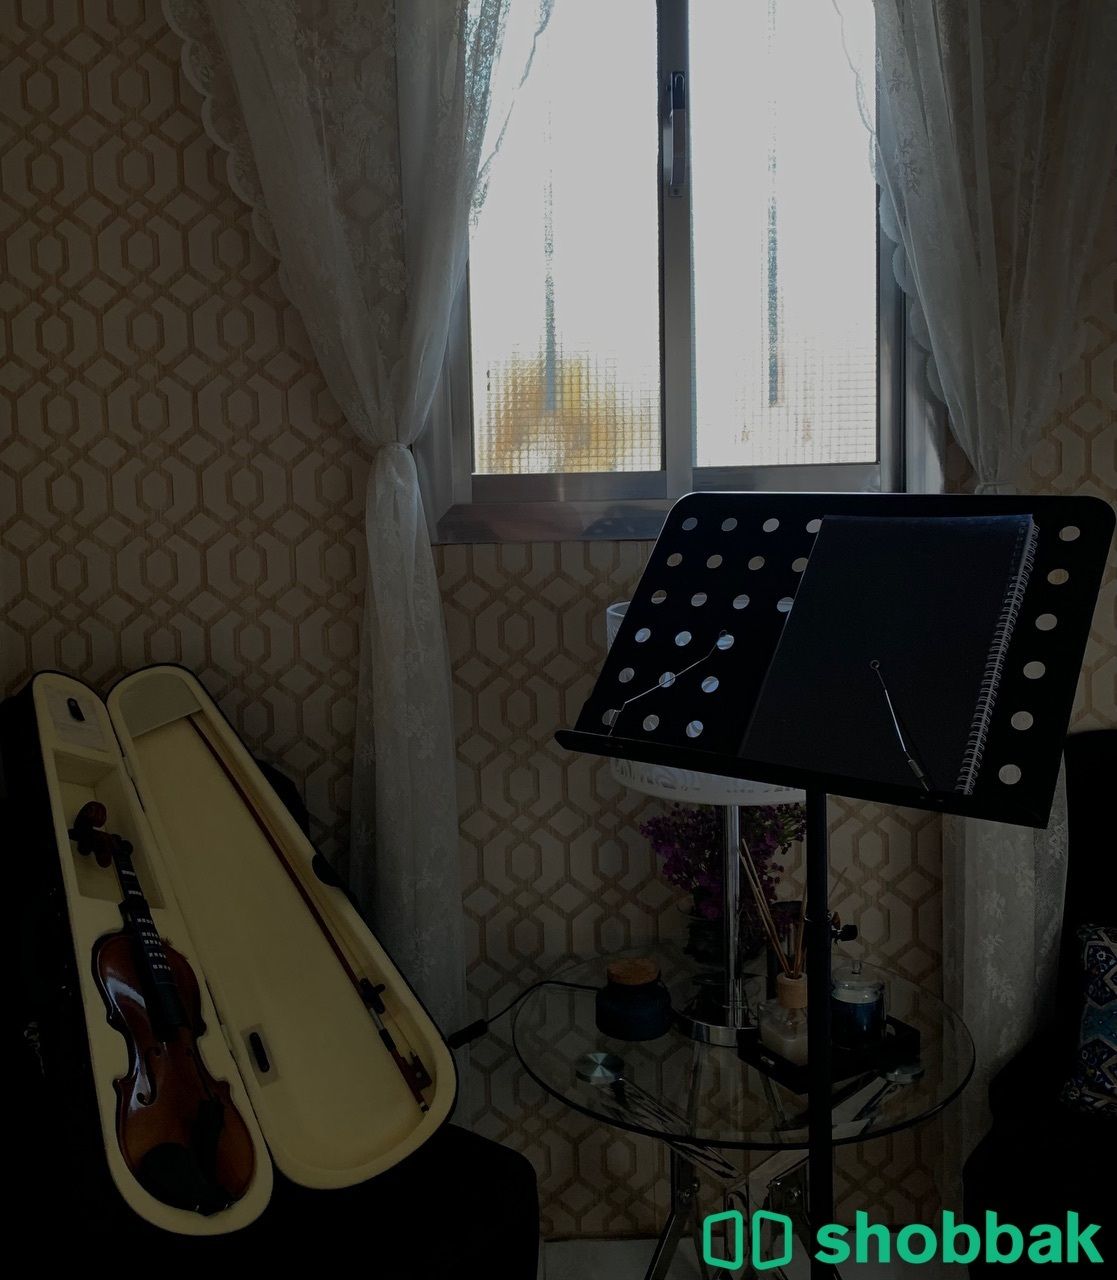 كمان للمتدئين جديد مع حامل نوته الموسيقيه مع دفتر لتعلم  Shobbak Saudi Arabia